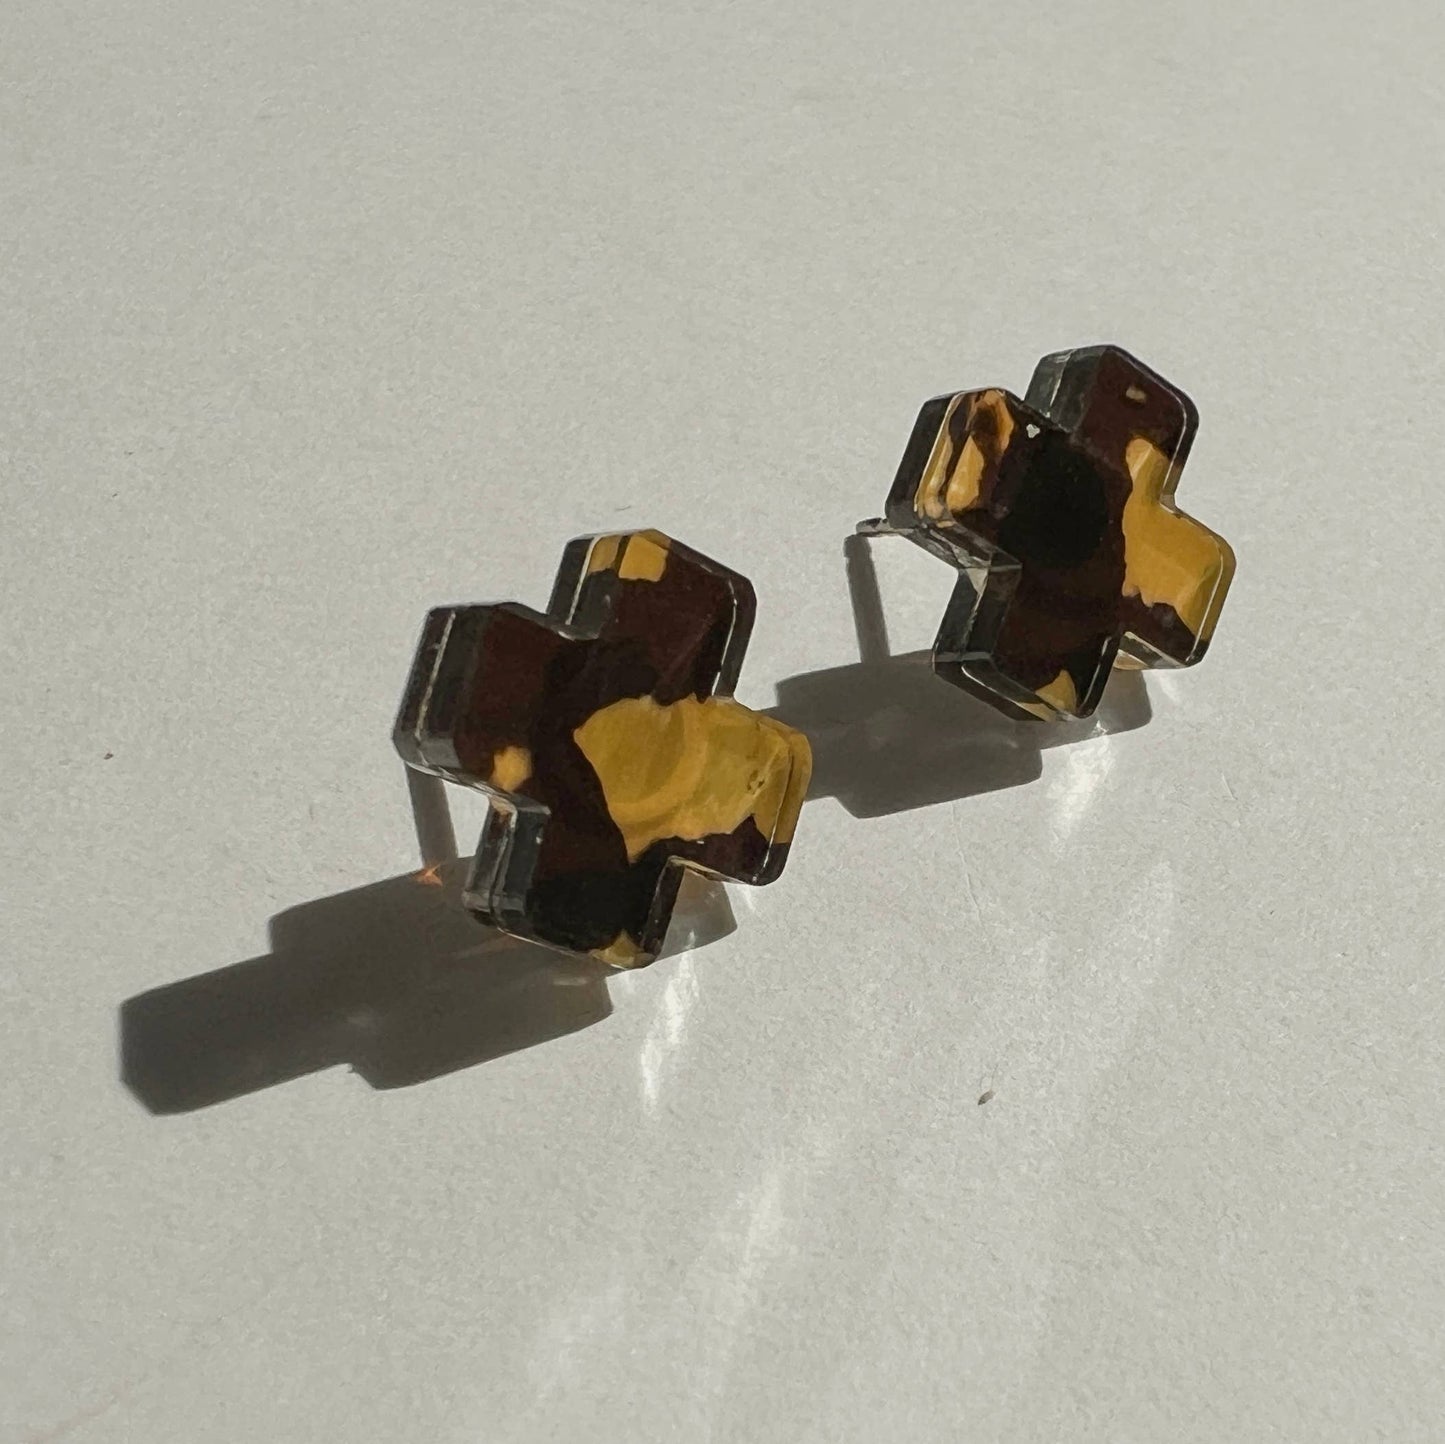 Tortoise Shell Cross Stud Earrings - Small Cross Earrings